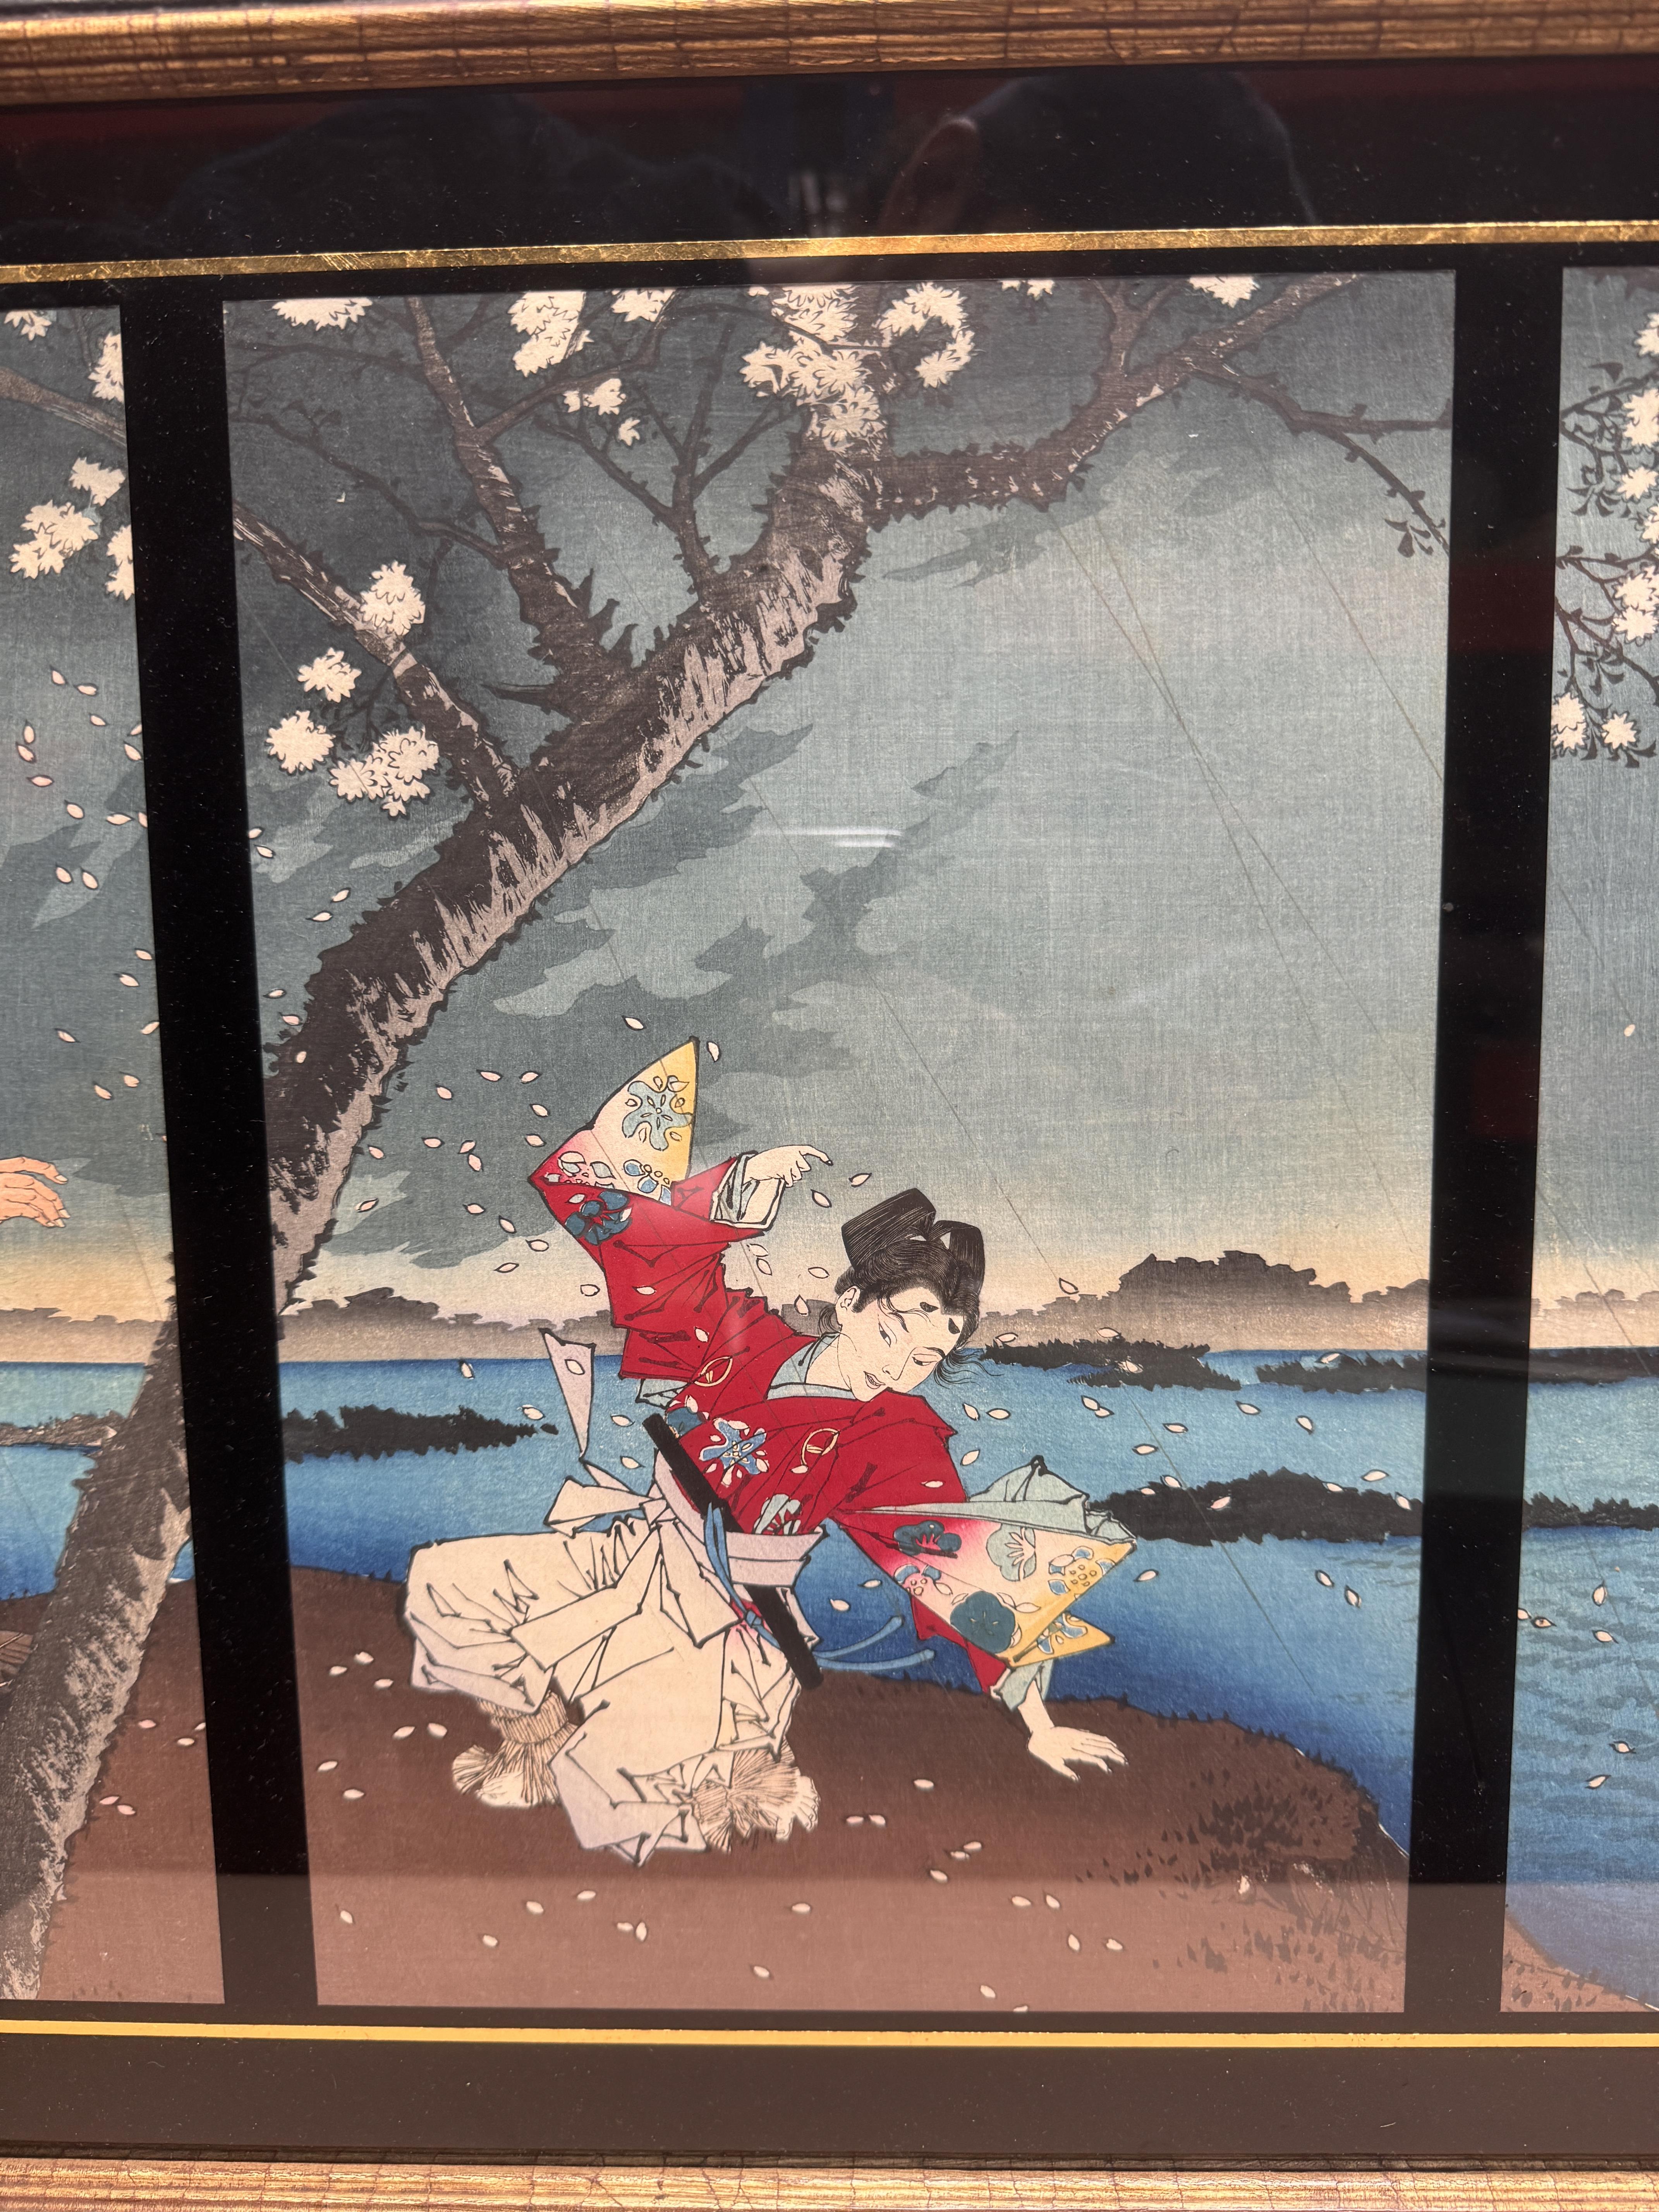 TSUKIOKA YOSHITOSHI (1797 – 1858), MIYAGAWA SHUNTEI (1873 – 1914) Two Japanese woodblock print tript - Image 18 of 23